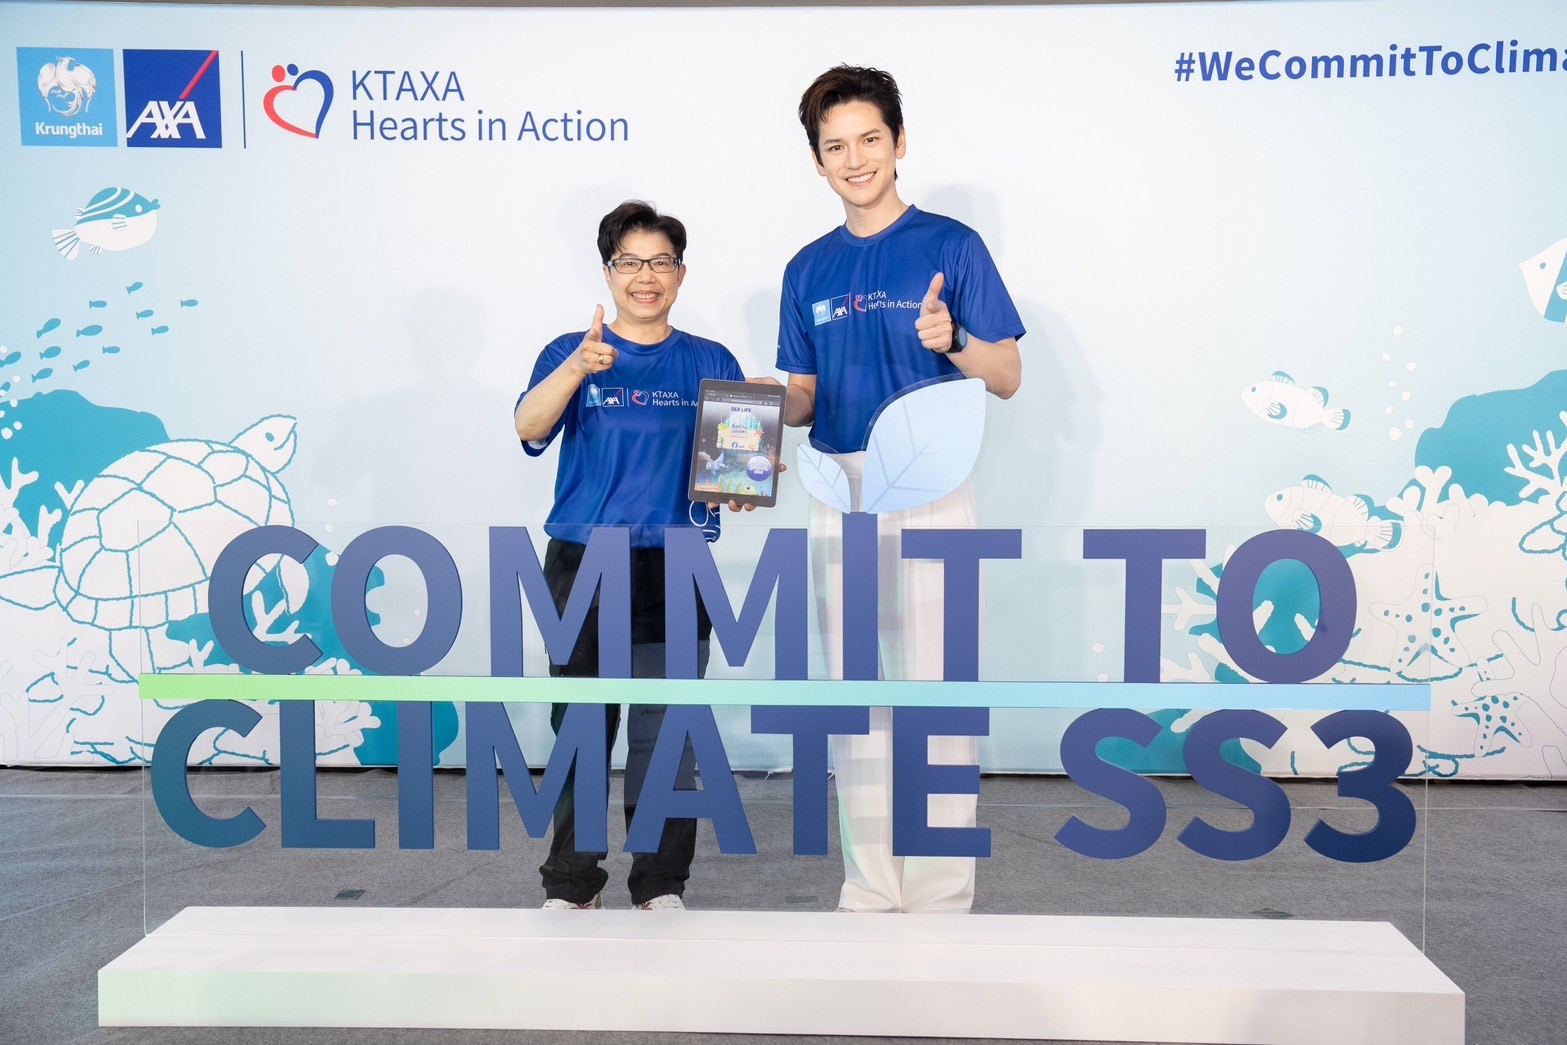 กรุงไทย–แอกซ่า ประกันชีวิต เปิดตัวแคมเปญใหญ่'Commit To Climate SS3'ใส่ใจสิ่งแวดล้อมทุกมิติ